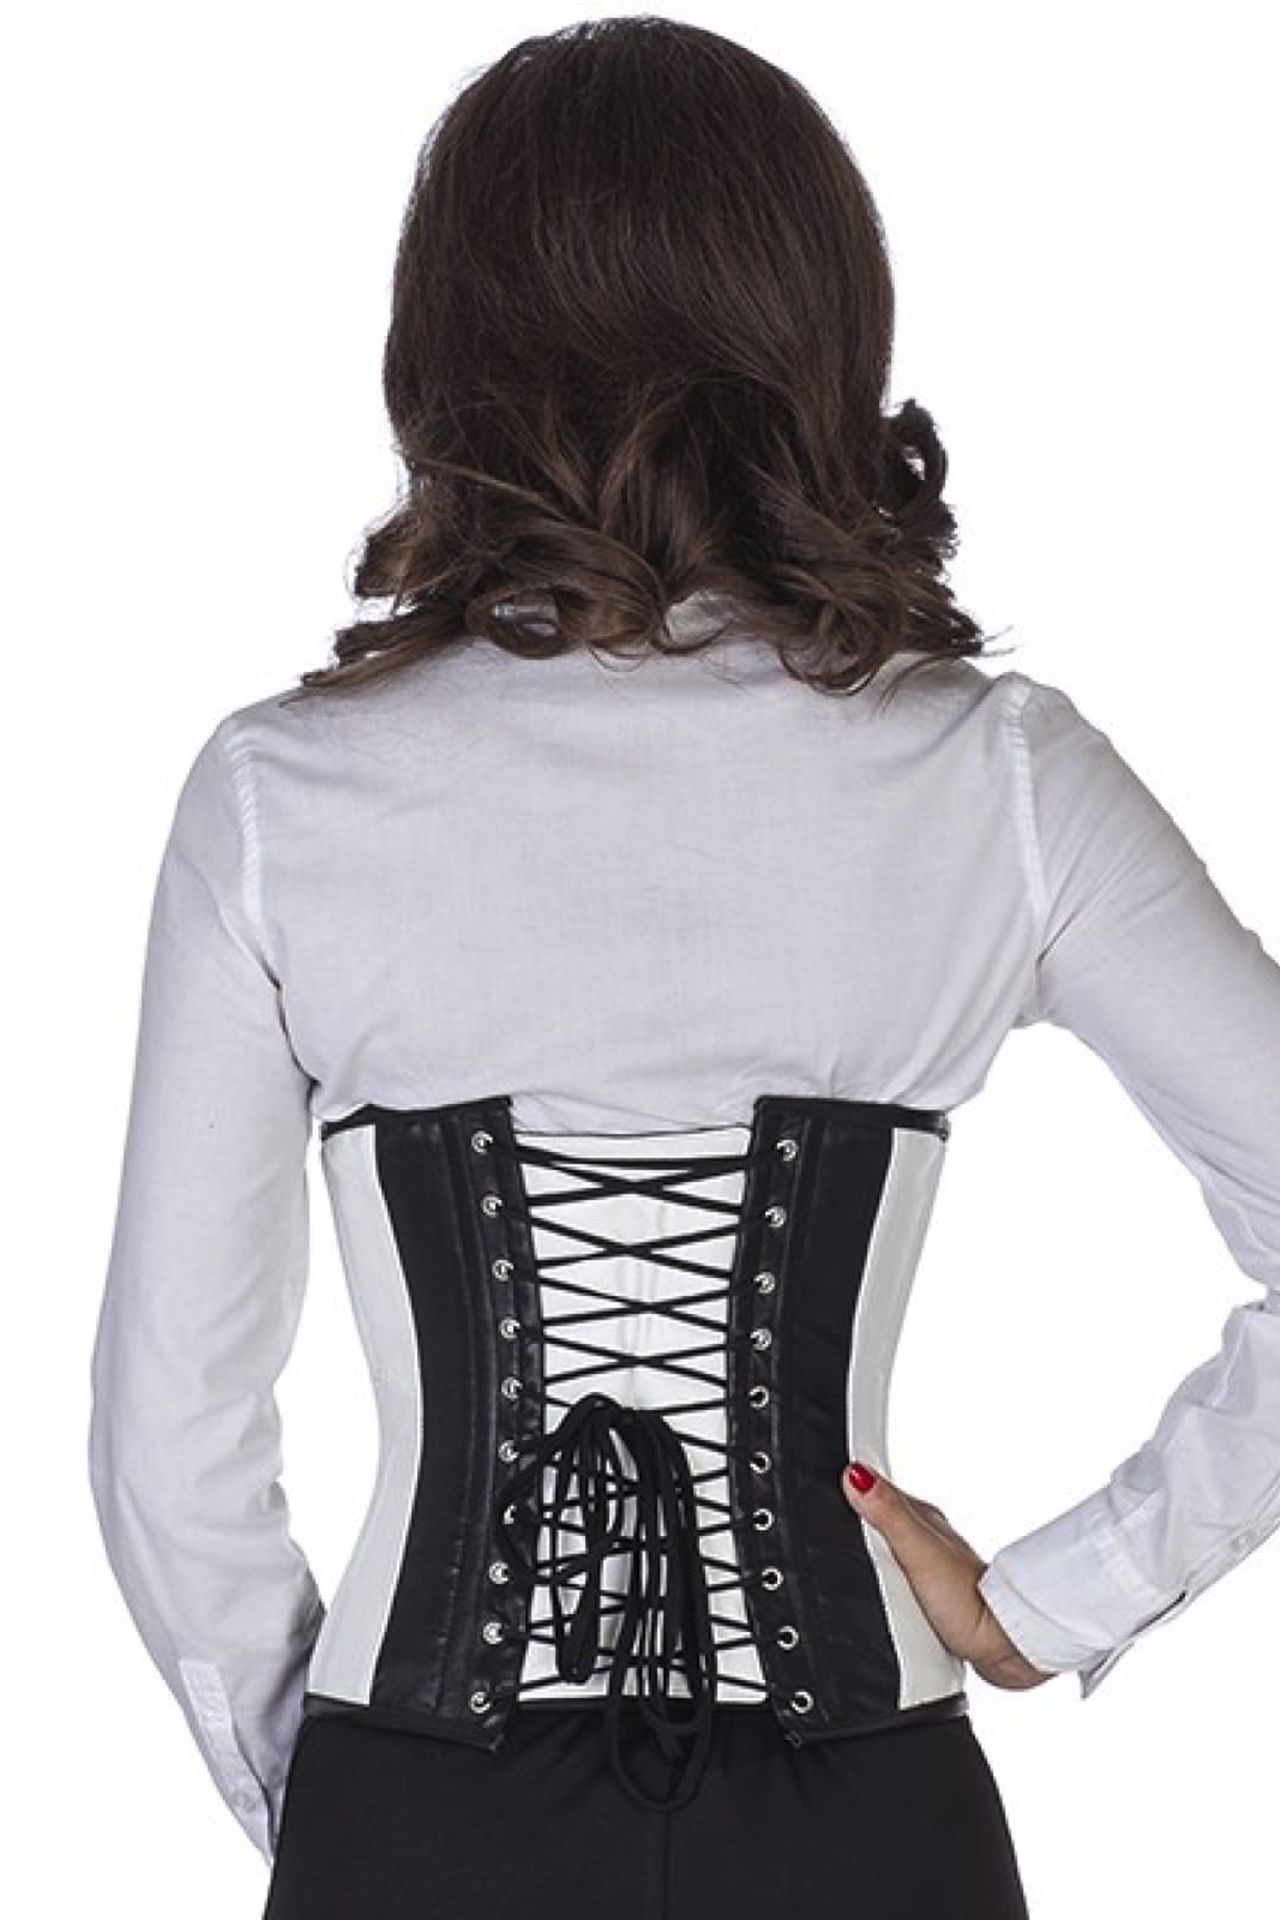 Leren corset zwart wit taille Korset lw35